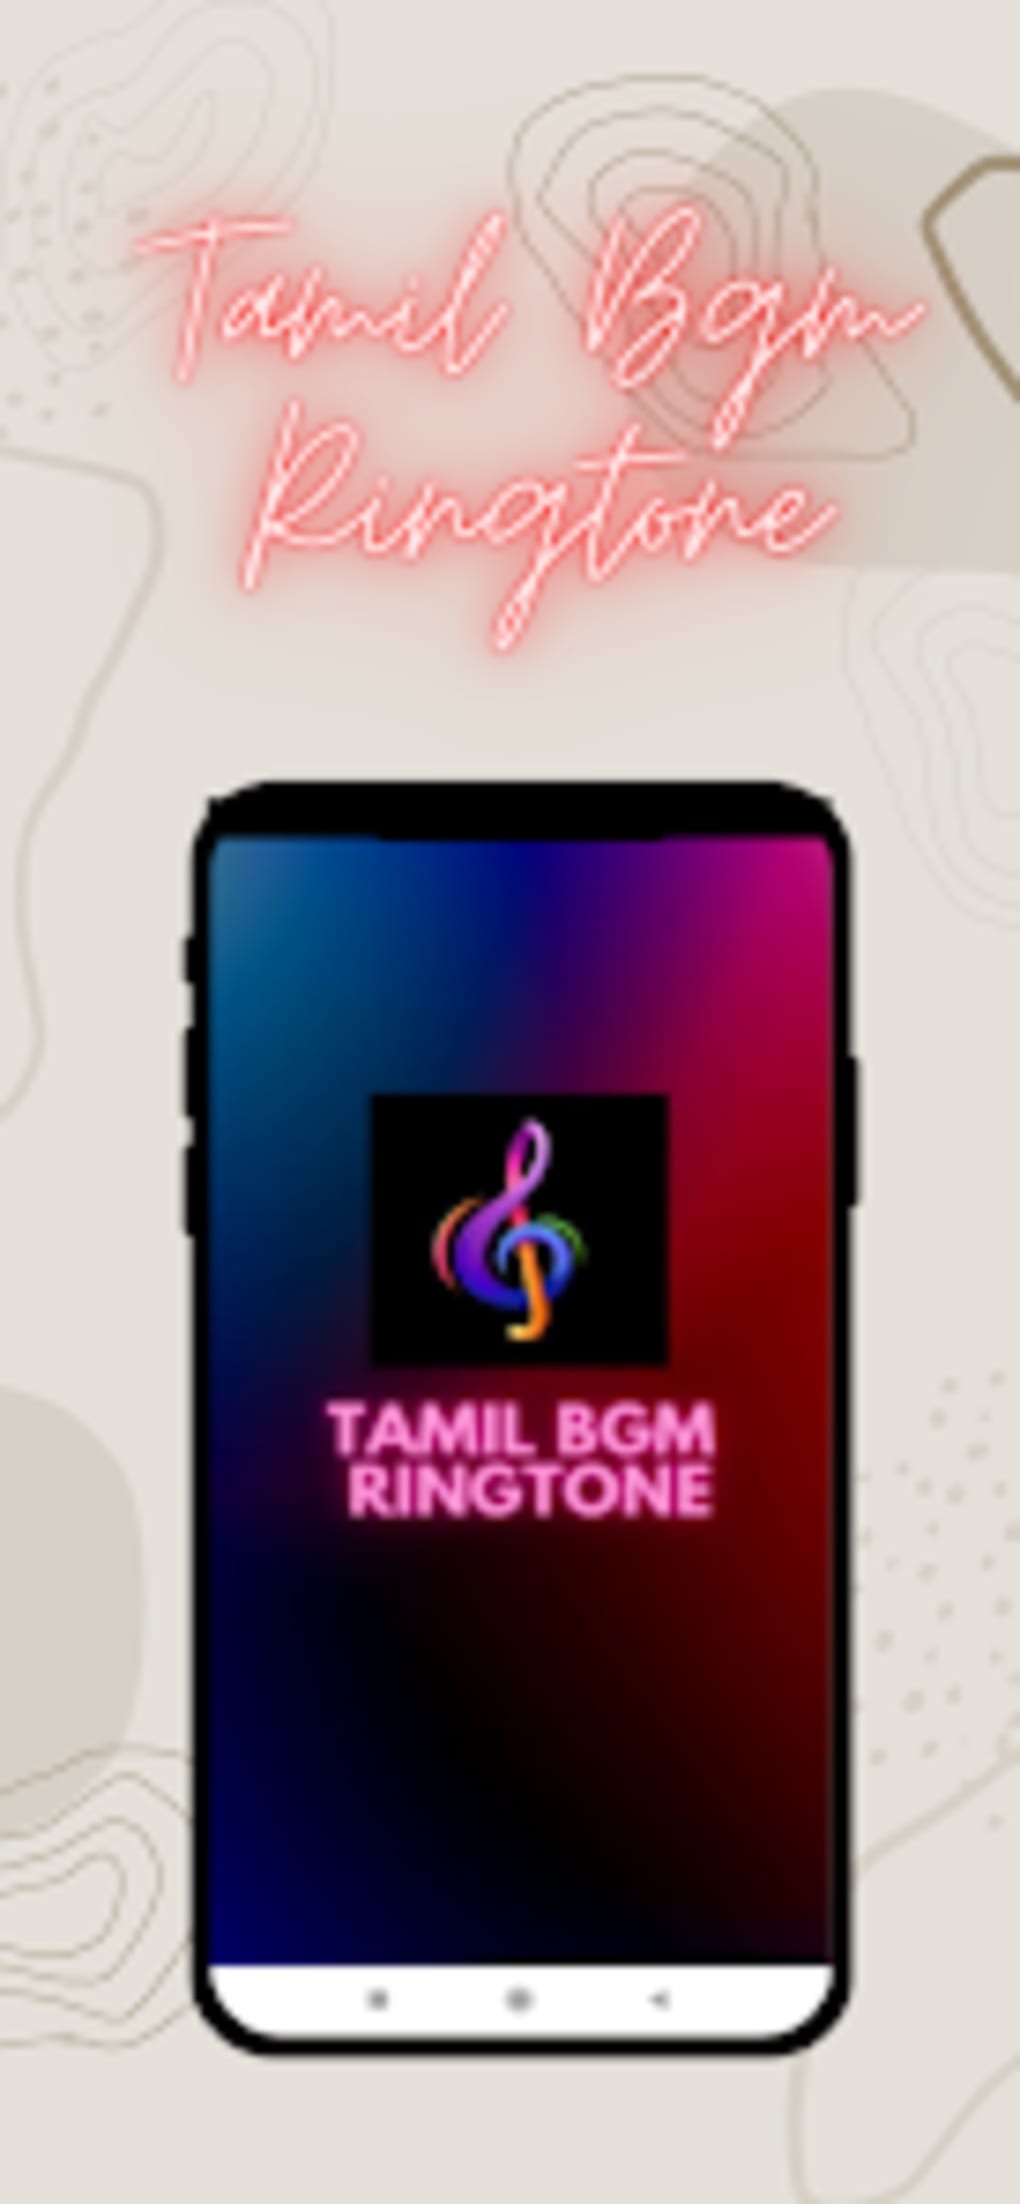 Jailer Ringtones BGM Mp3 Download (Tamil) Best Rajinikanth -  MobileBgmRingtones.Com